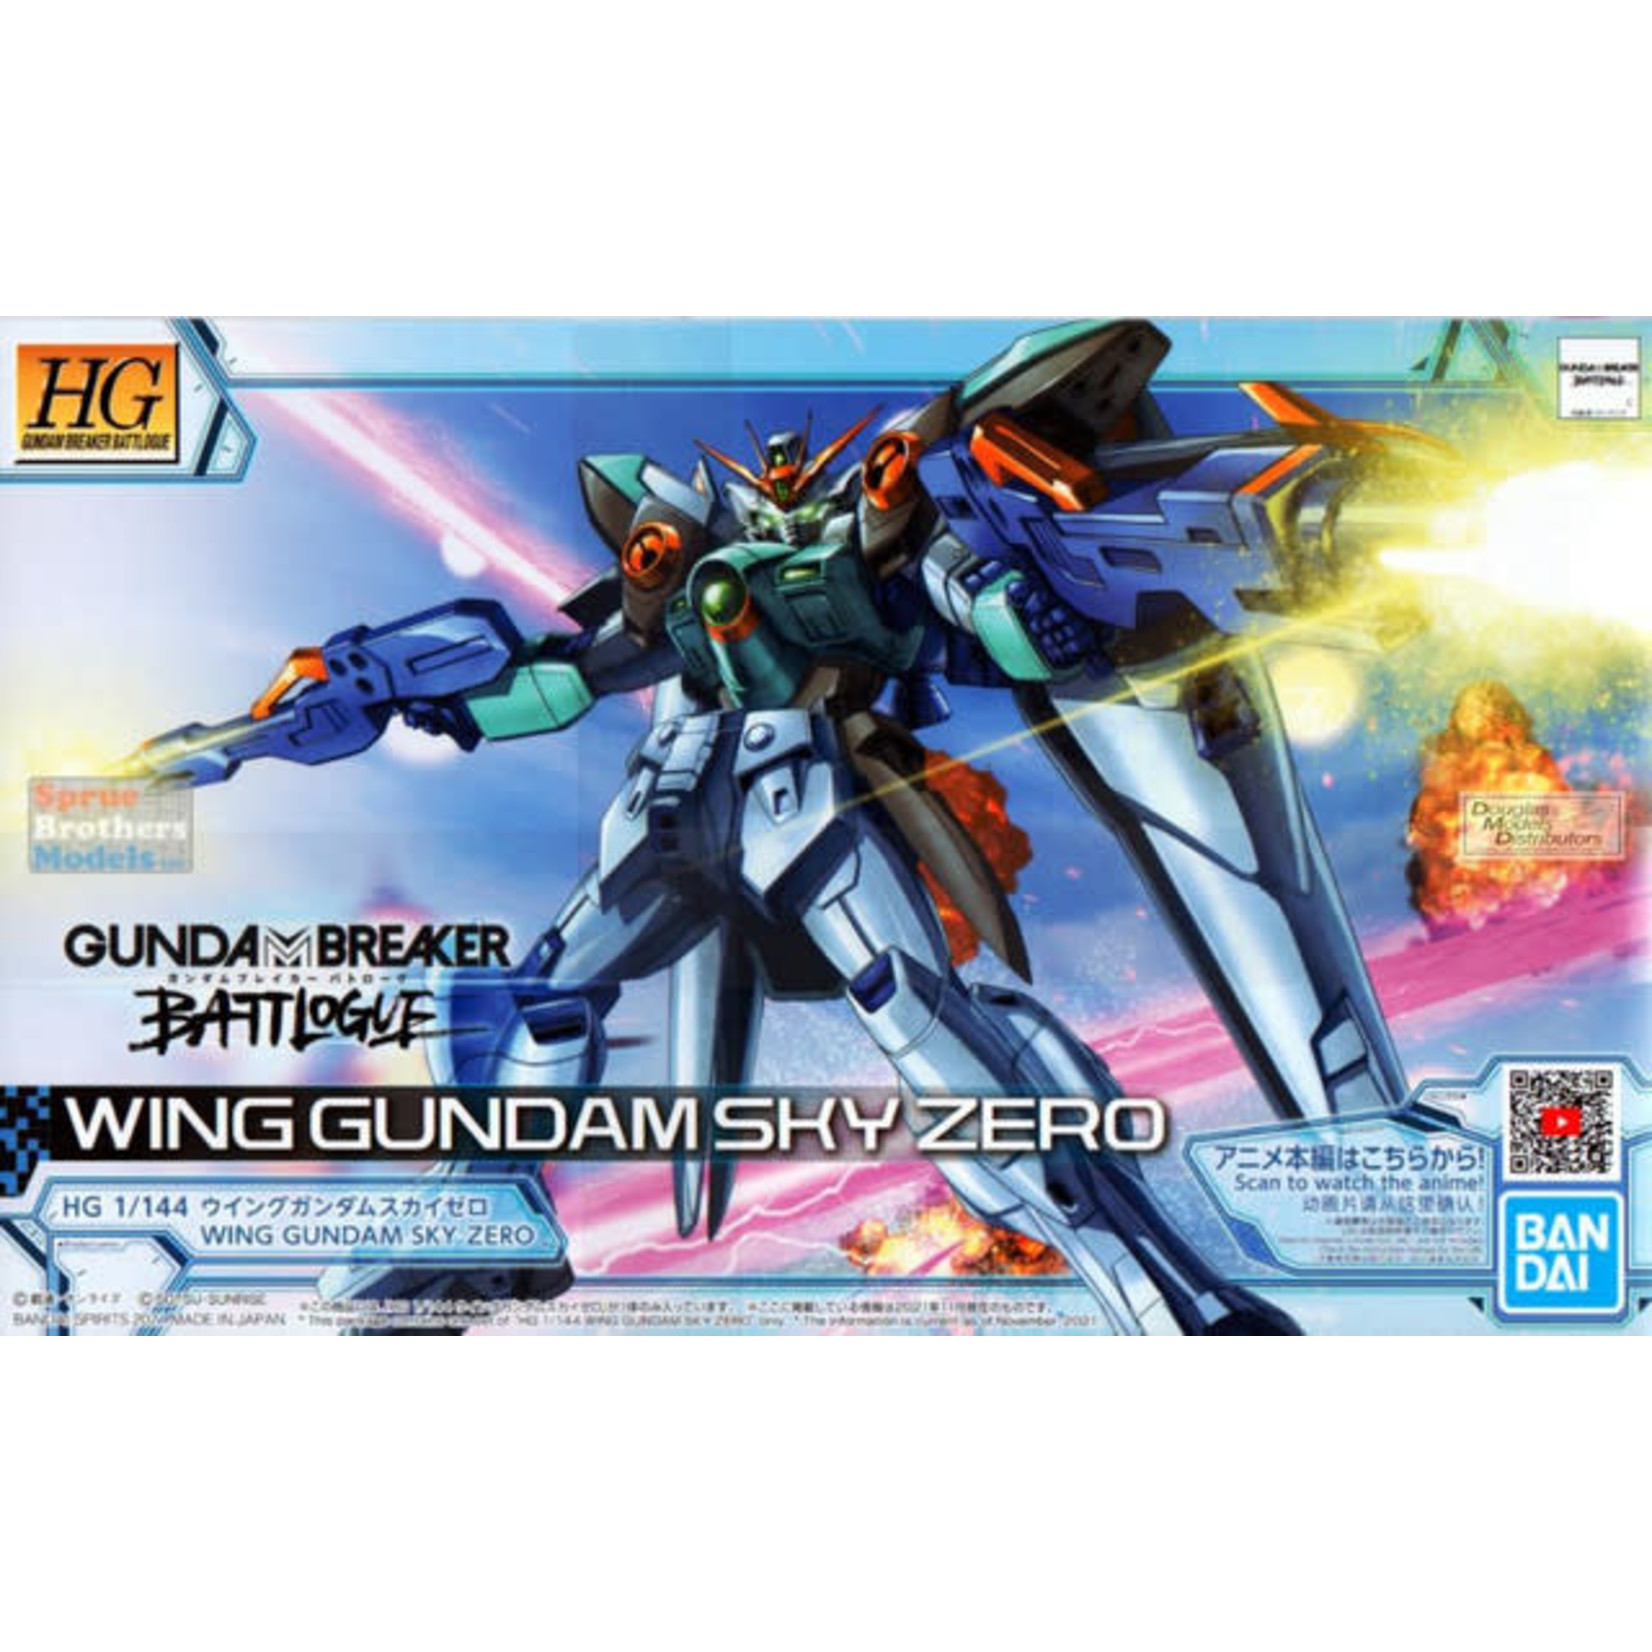 Bandai Bandai 2555034 HG Wing Gundam Sky Zero